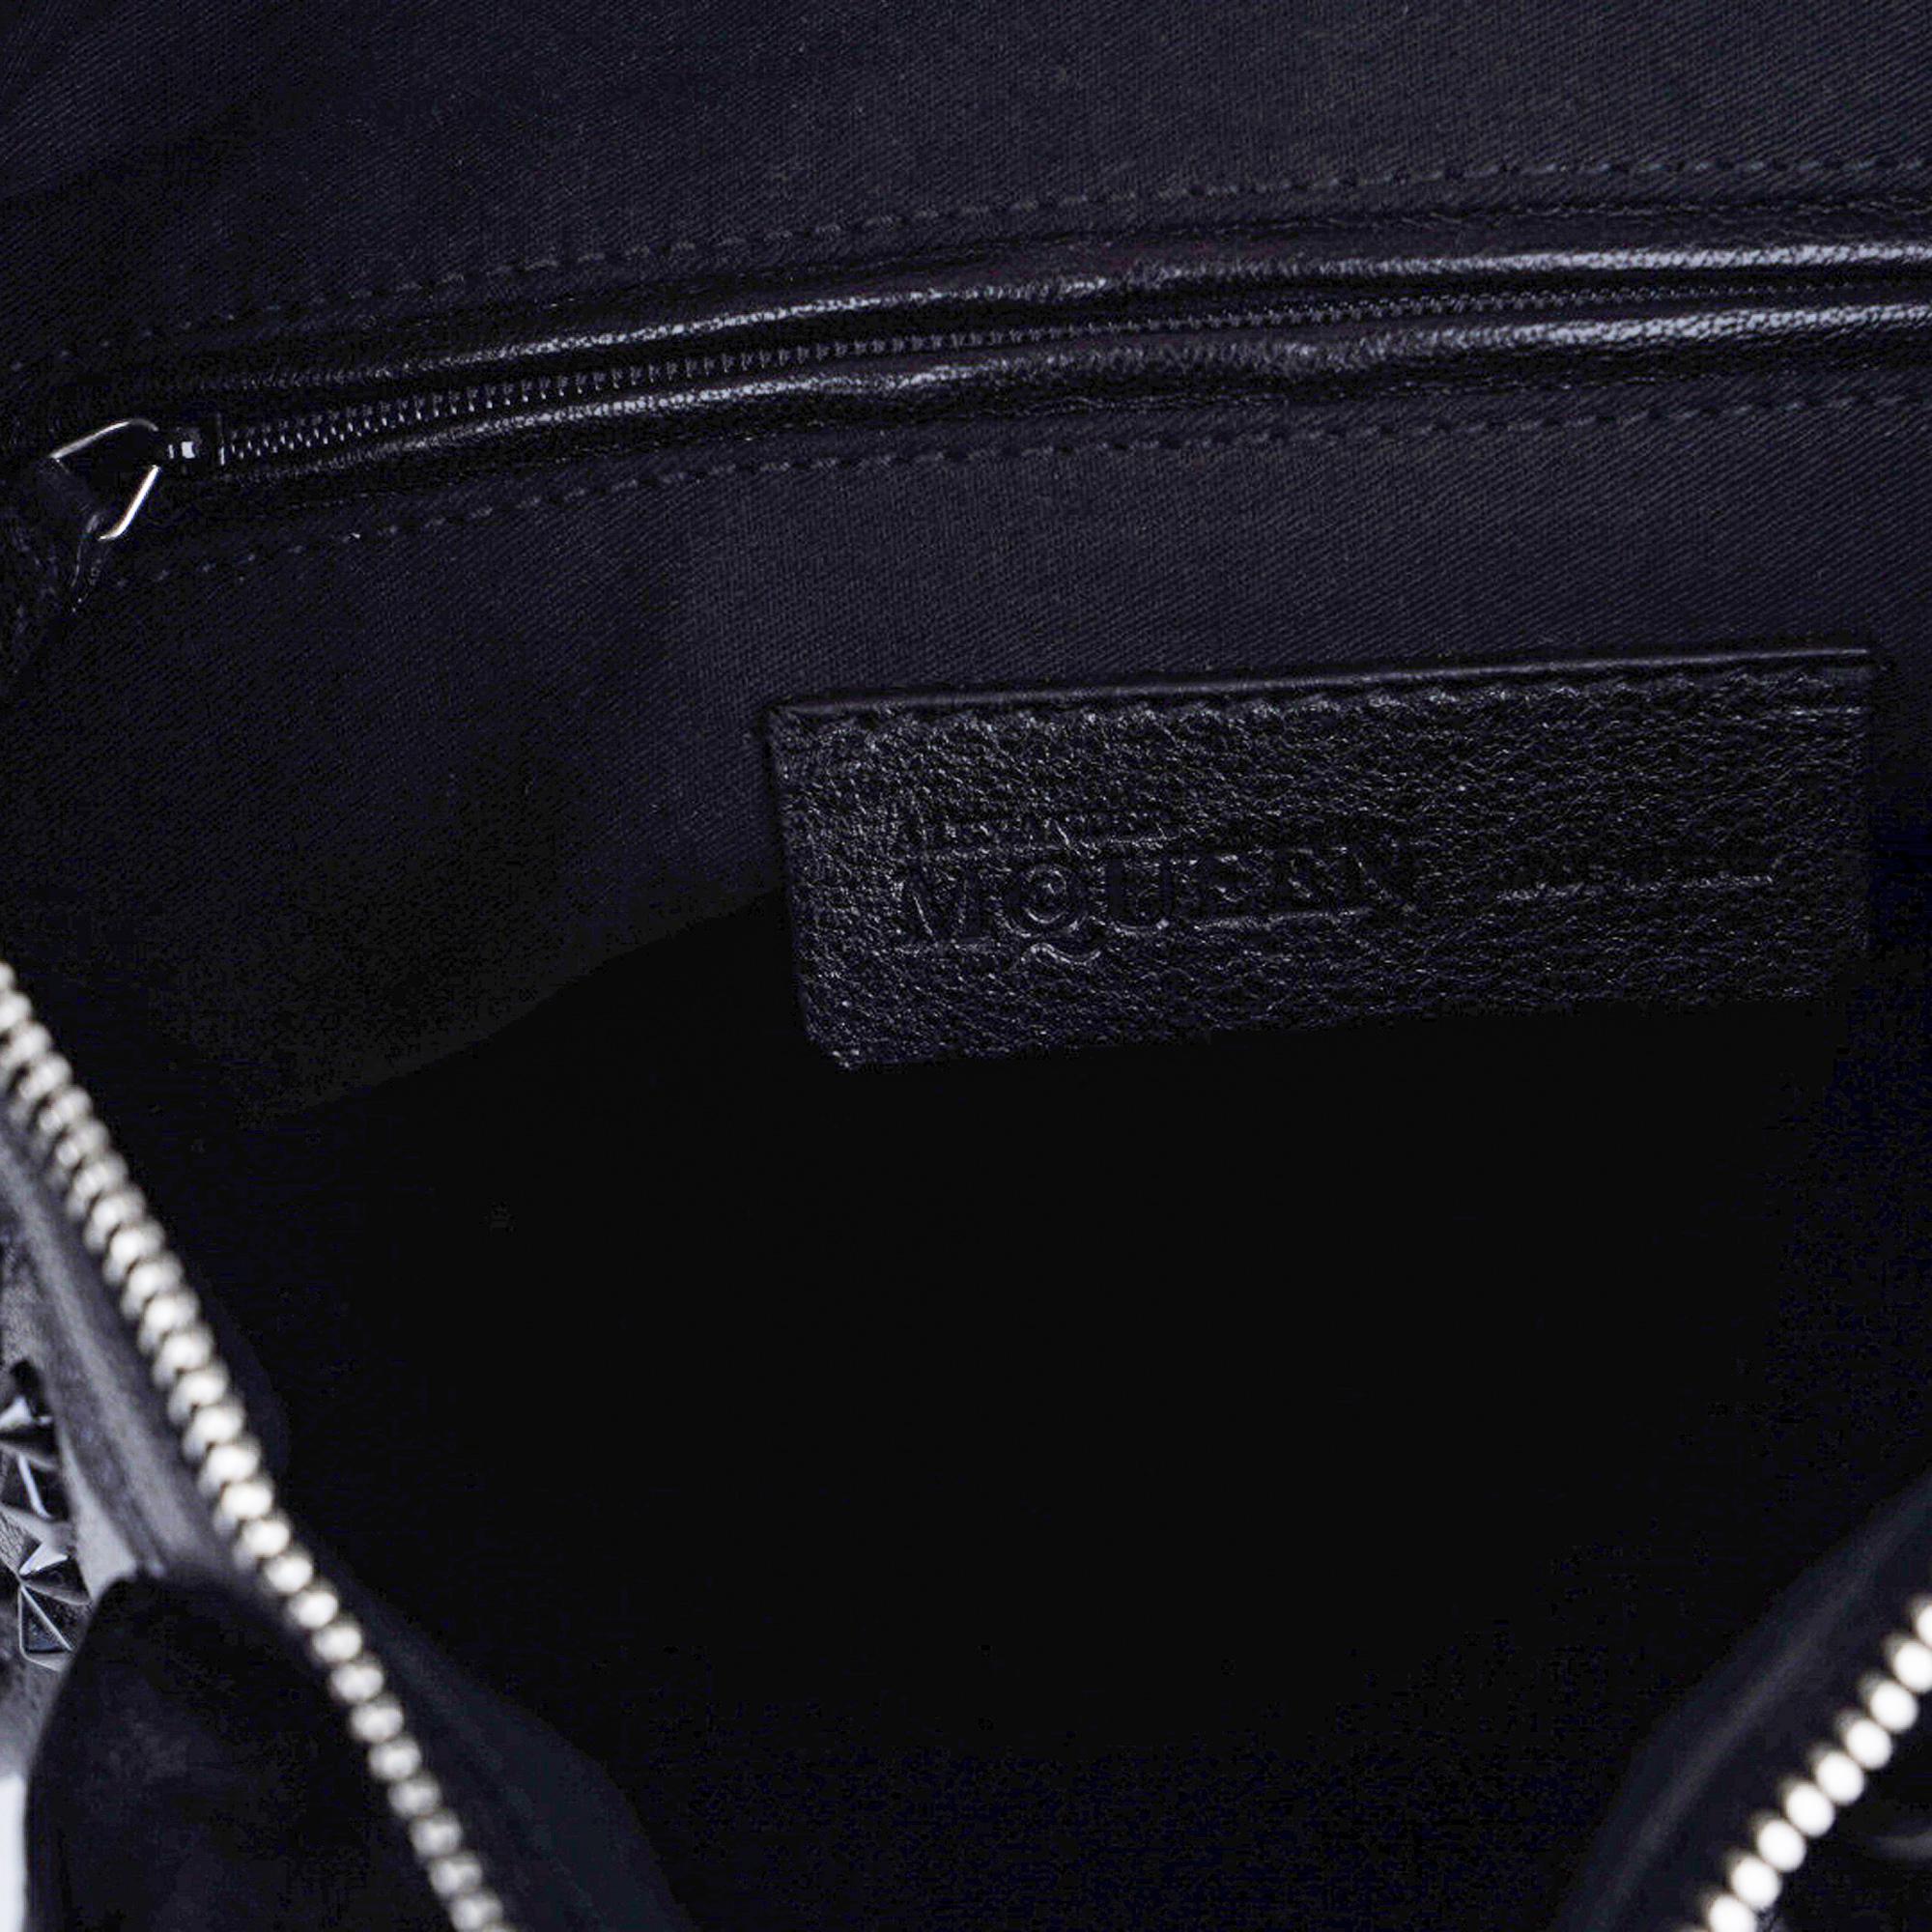 Alexander McQueen Bag Black on Black De Manta Tote Shoulder Strap 3